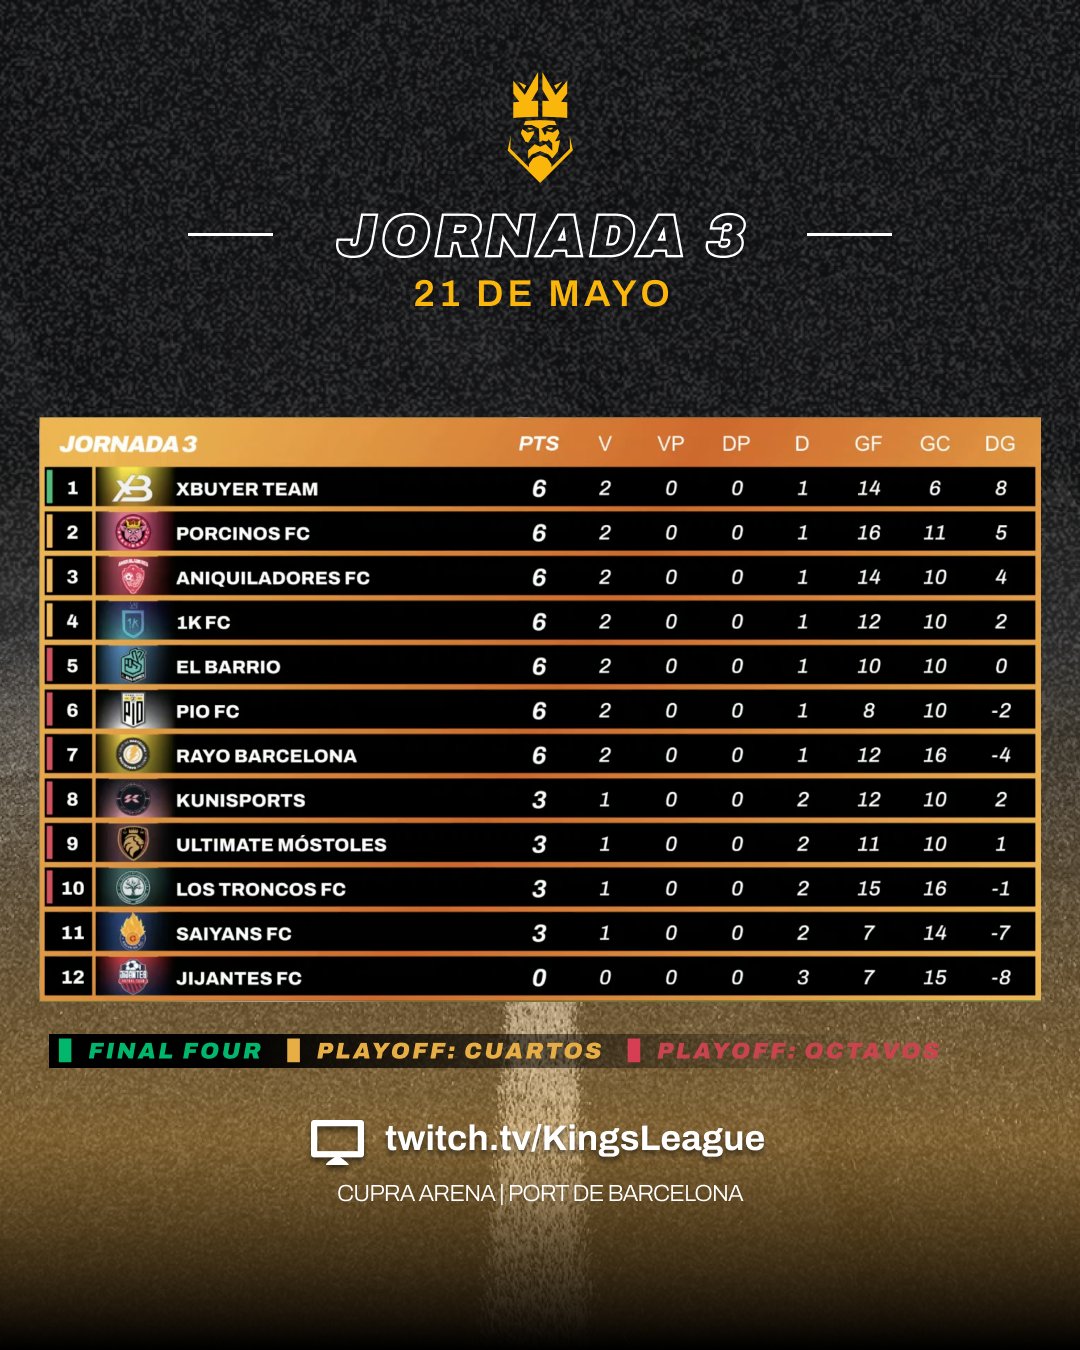 Jornada 3 kings league 2 split